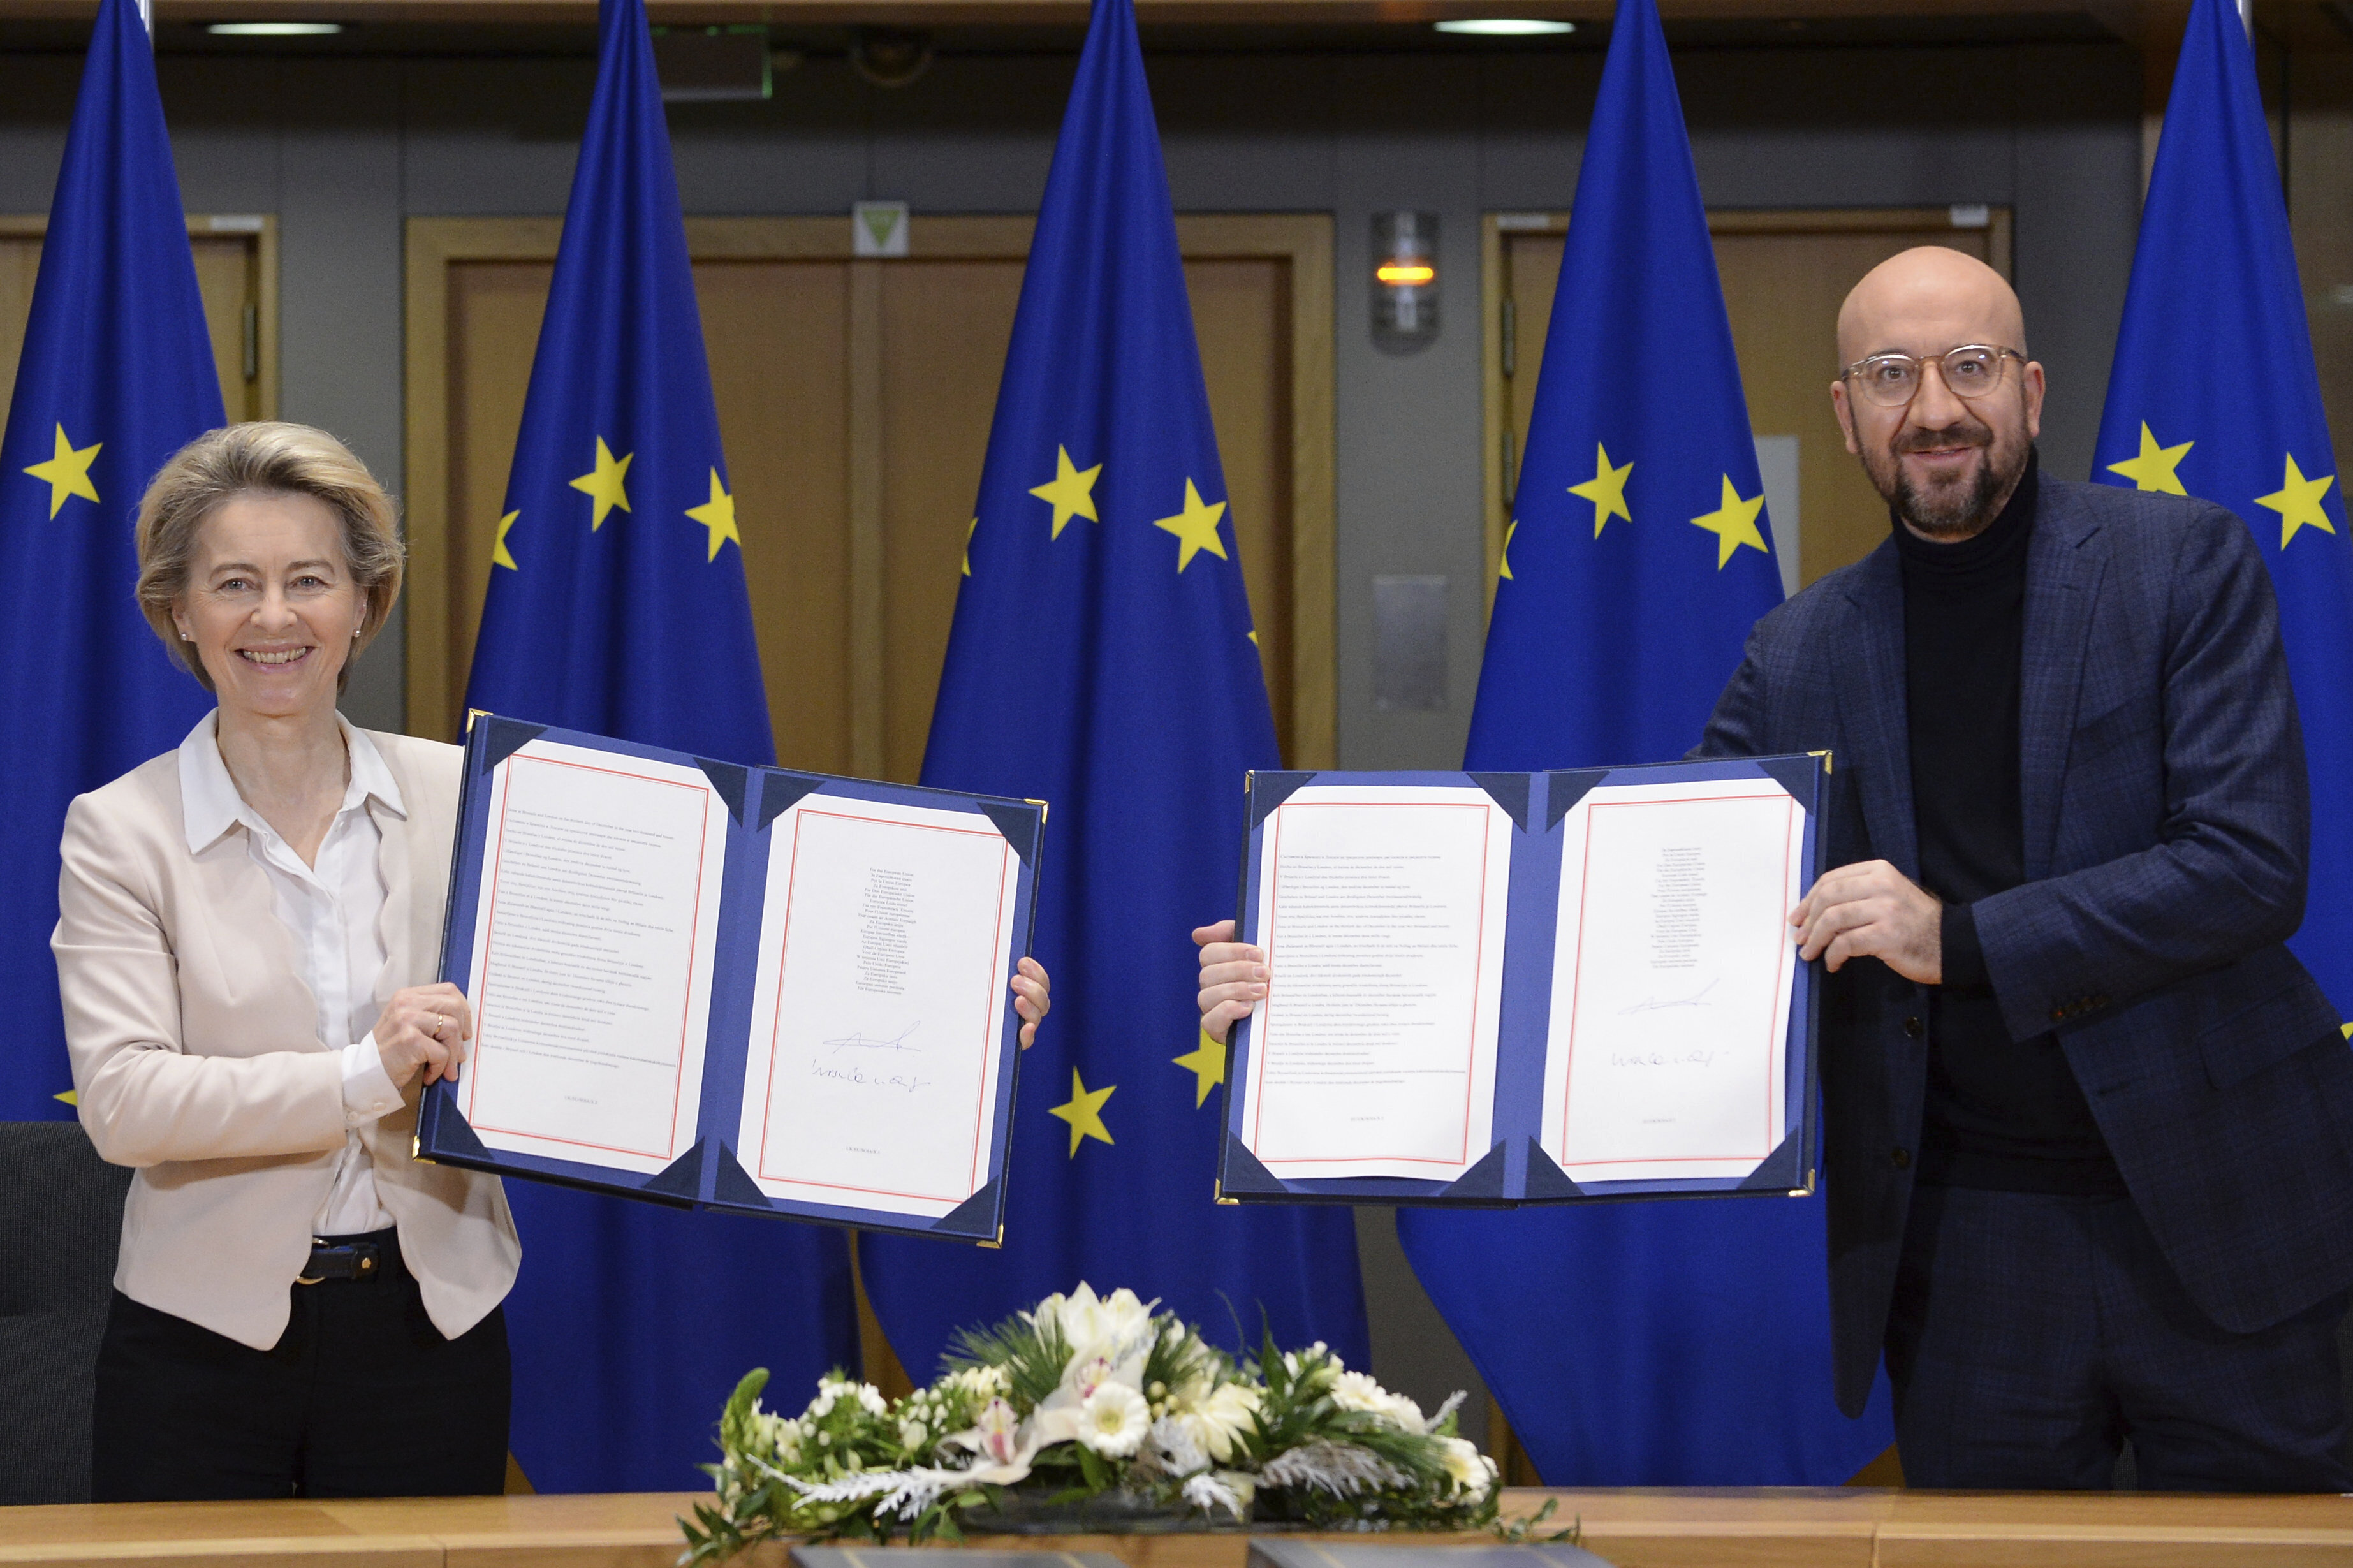 Ursula von der Leyen and Charles Michel sign Brexit agreement